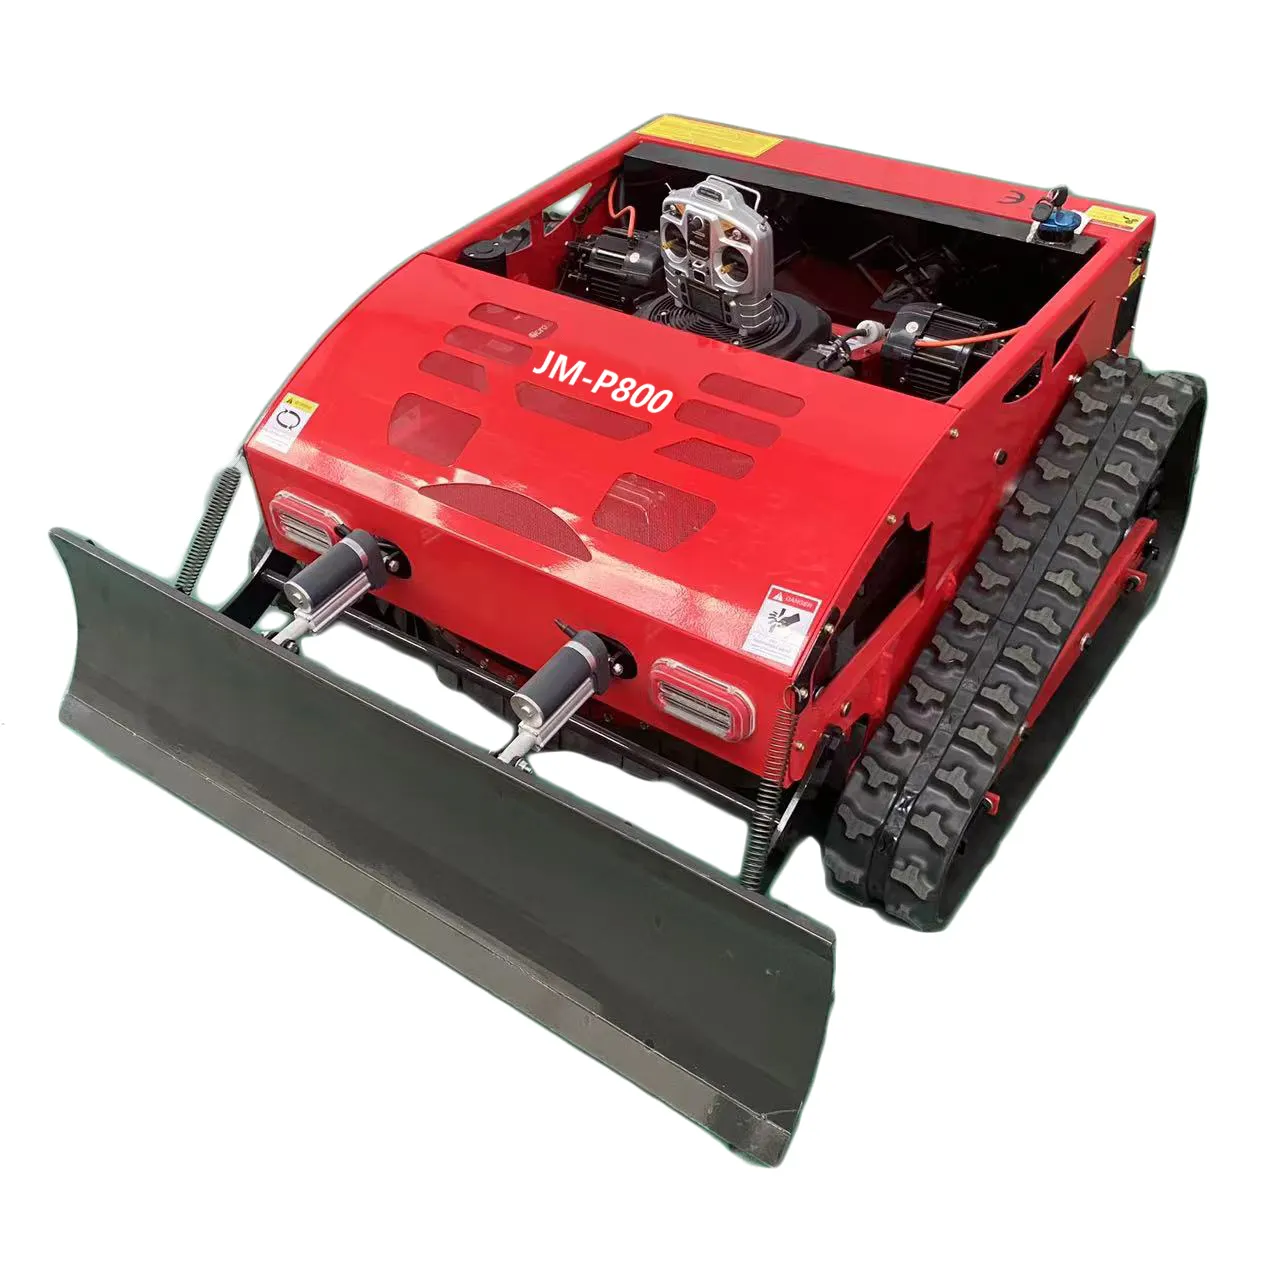 JMC800リモートコントロール芝刈り機および芝刈り機ロボットおよびガソリンエンジン付きグラスカッター